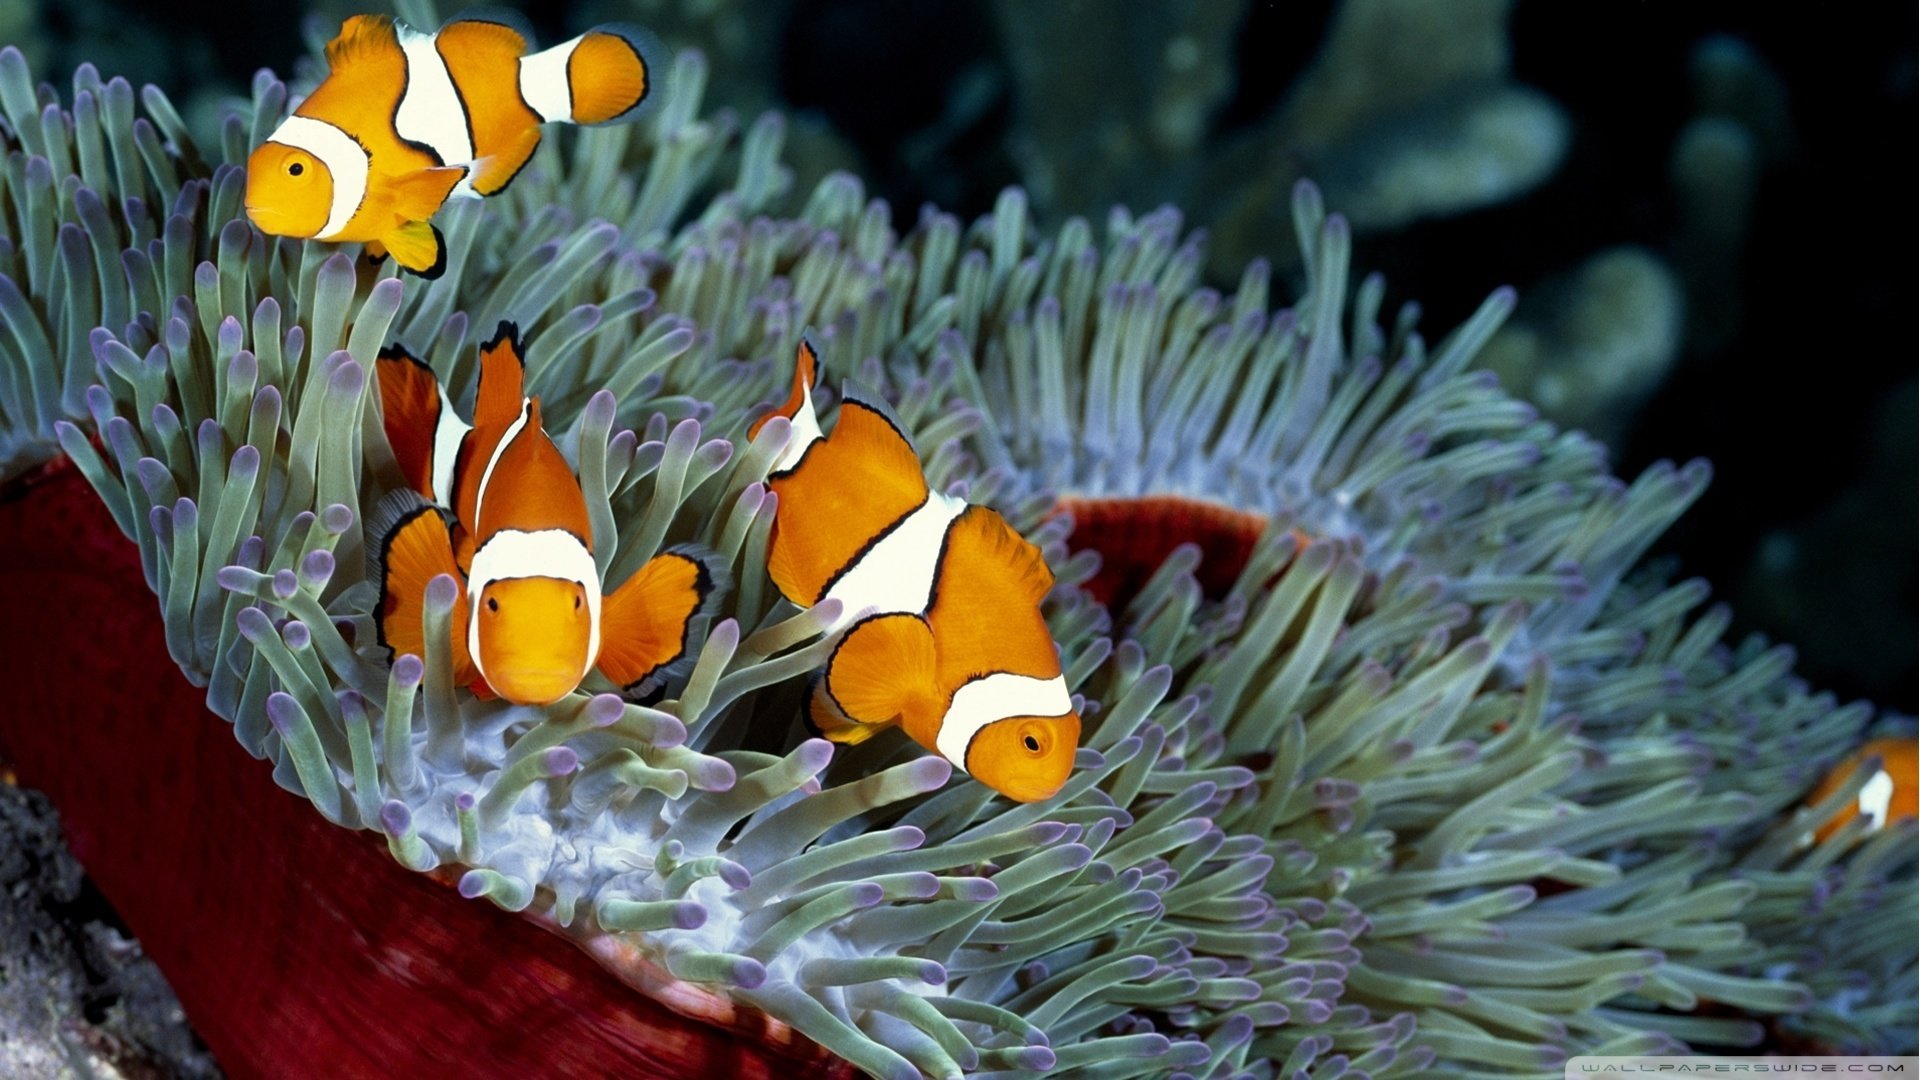 Best Clownfish wallpaper ID:53242 for High Resolution hd 1080p desktop